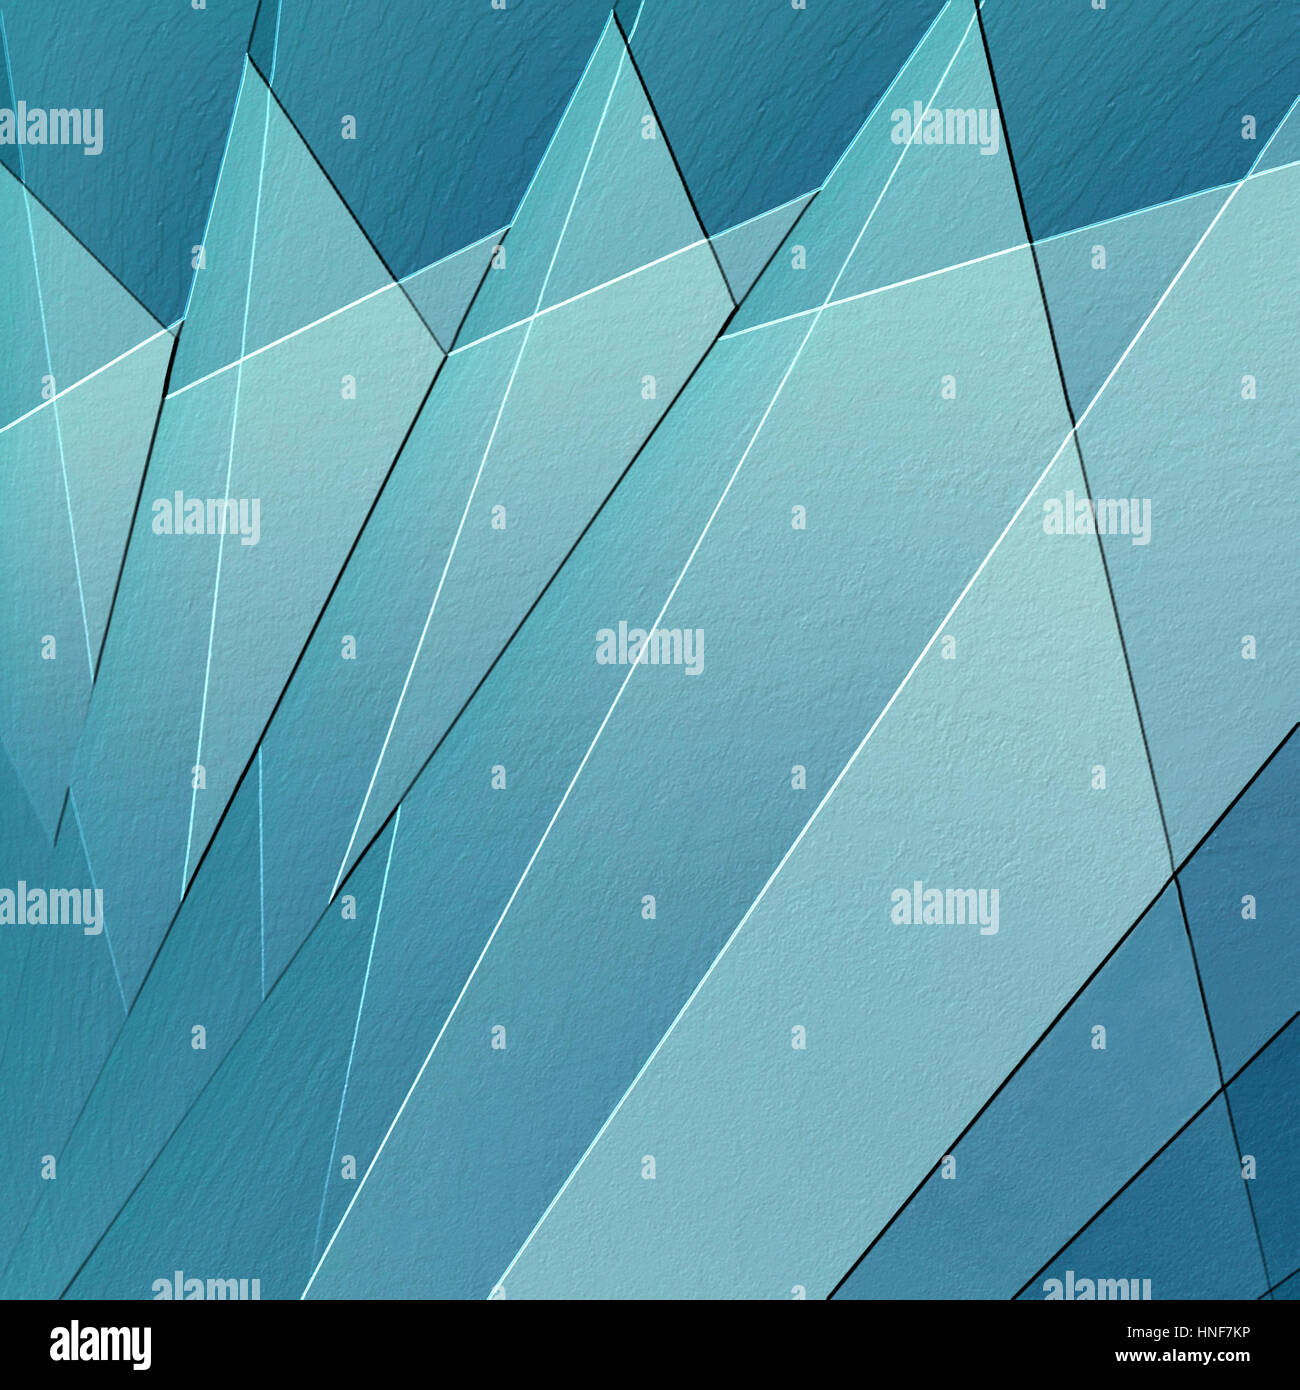 abstrakte strukturierten Hintergrund mit hellen und dunklen blauen Dreieck Fan Formen in kühle geometrischen Muster mit erhöhten Rand 3D-Effekt, künstlerisch-Business-design Stockfoto